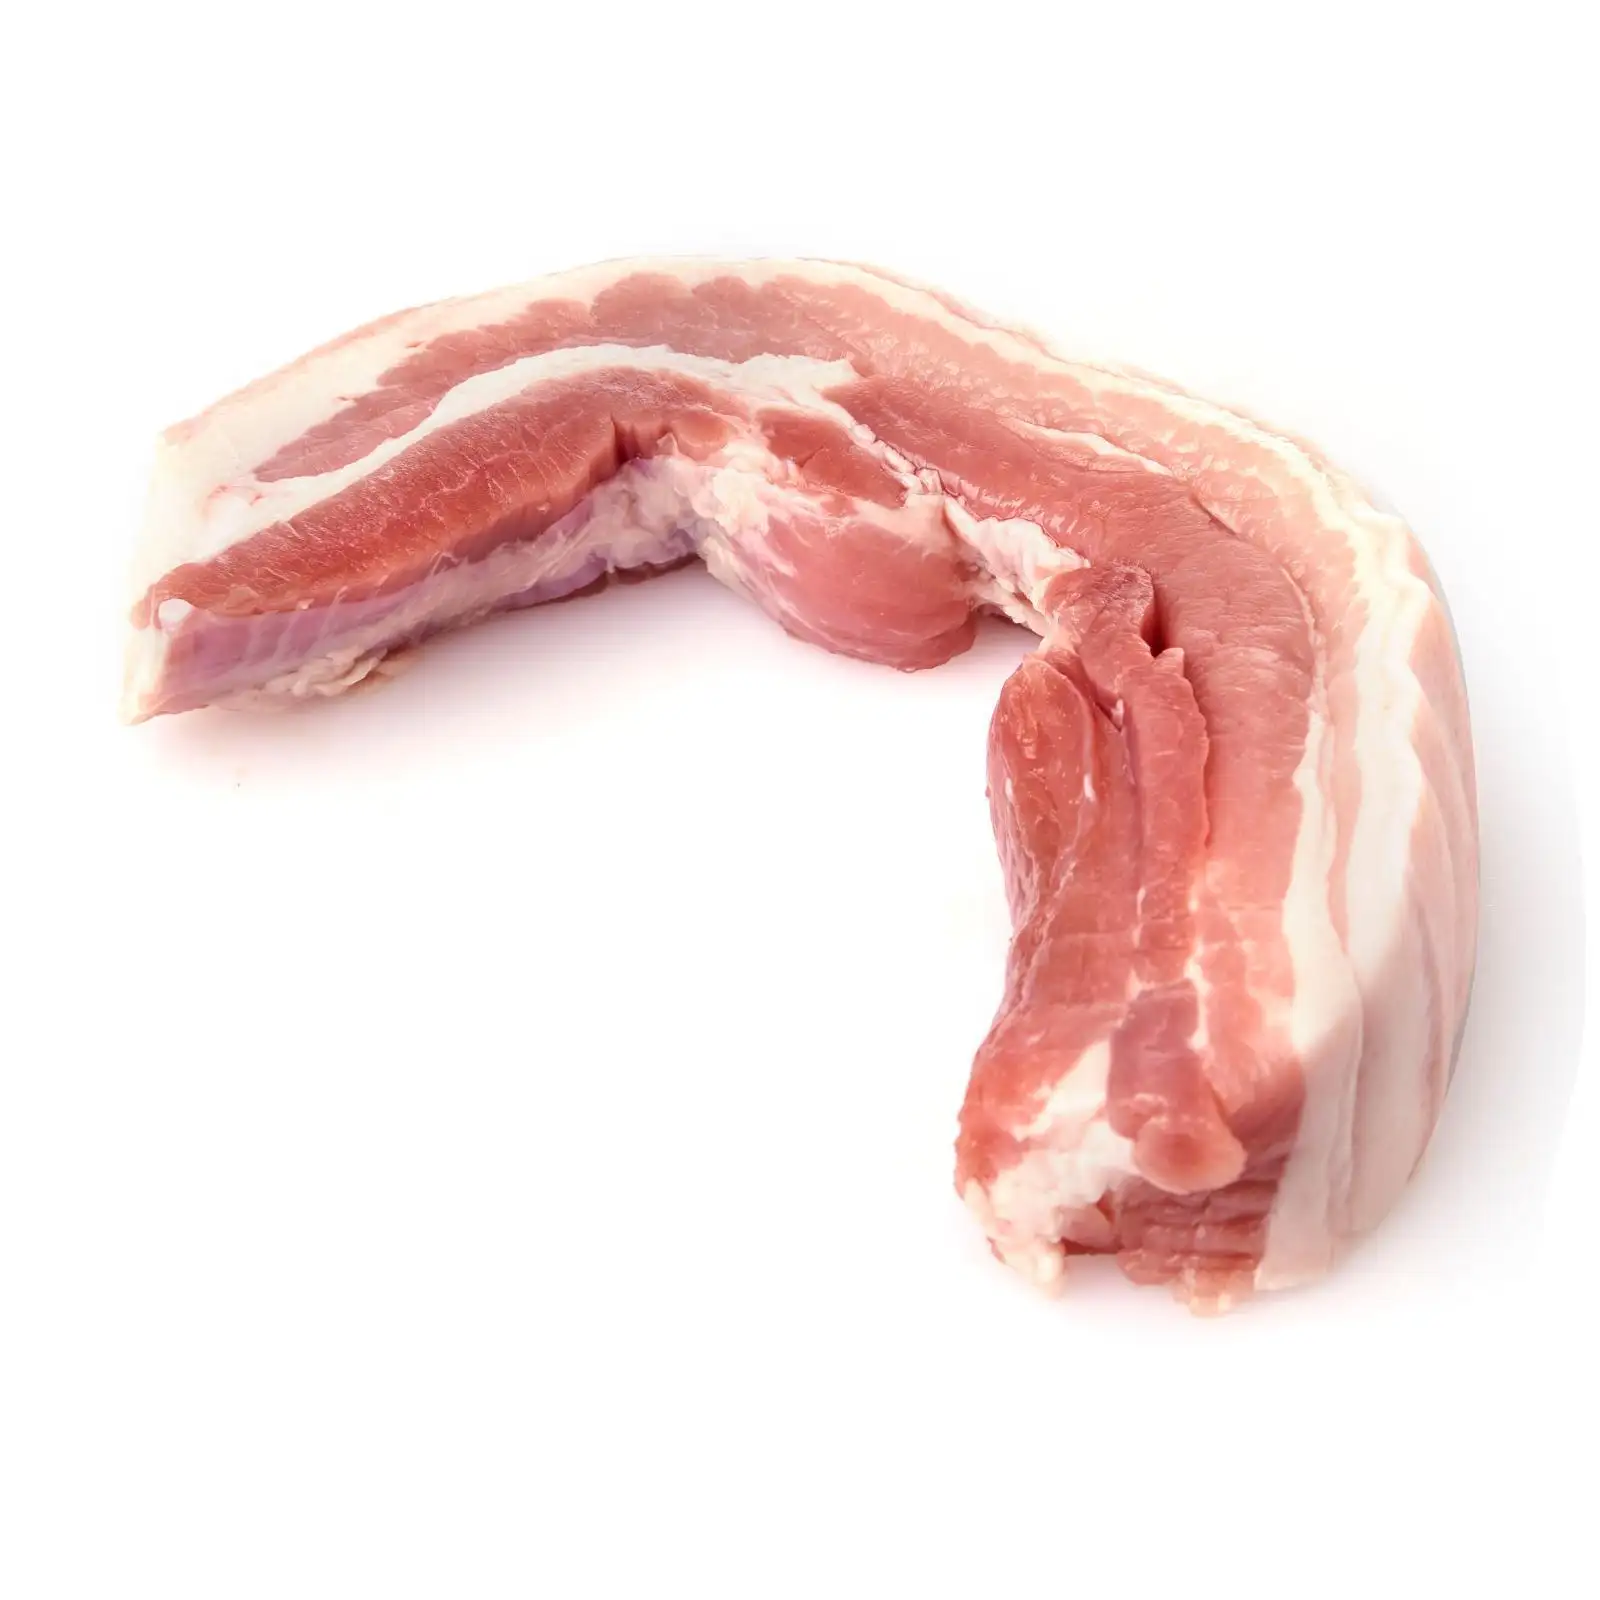 Großhandel Fleischmaterial Überlegene Qualität frisches Schweinefleisch gefrorenes Fleischprodukt gefrorenes rohes Schweinefleisch niedriger Preis